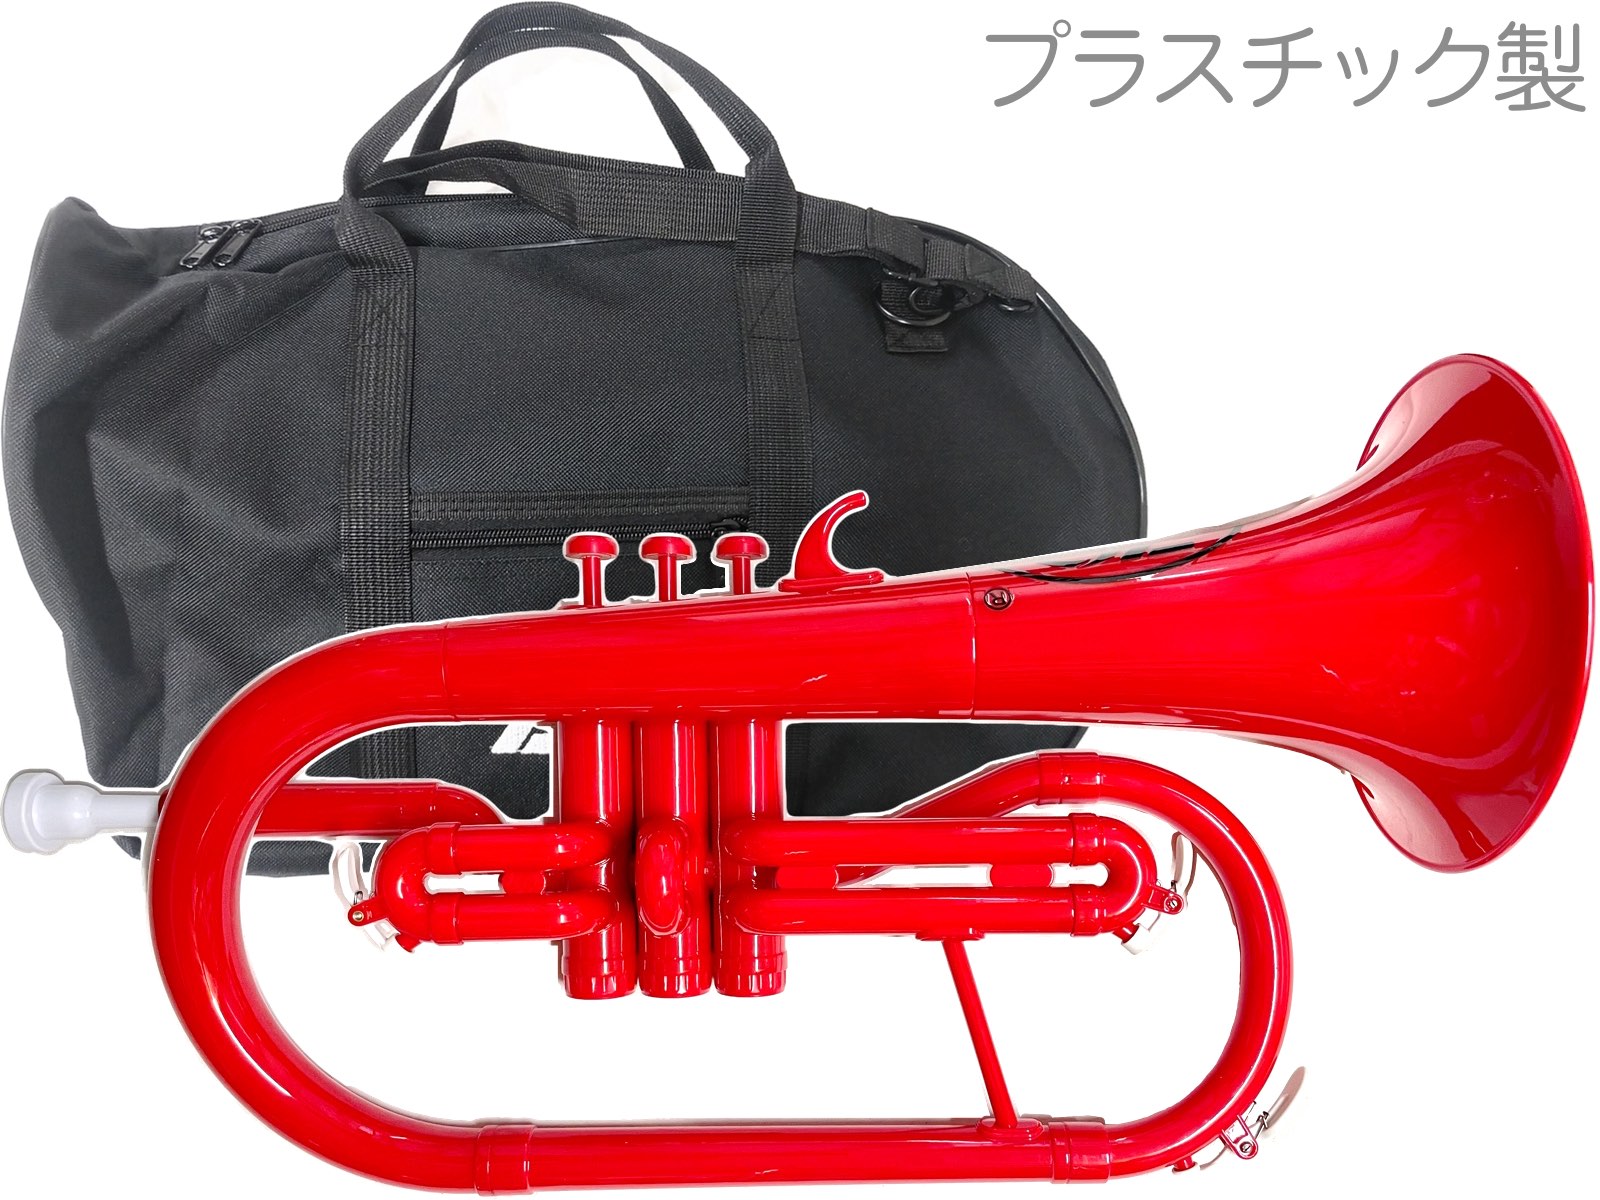 ZO ( ゼットオー ) FL-01 フリューゲルホルン レッド 新品 アウトレット プラスチック 管楽器 Flugel horn red 楽器 北海道 沖縄 離島不可のサムネイル